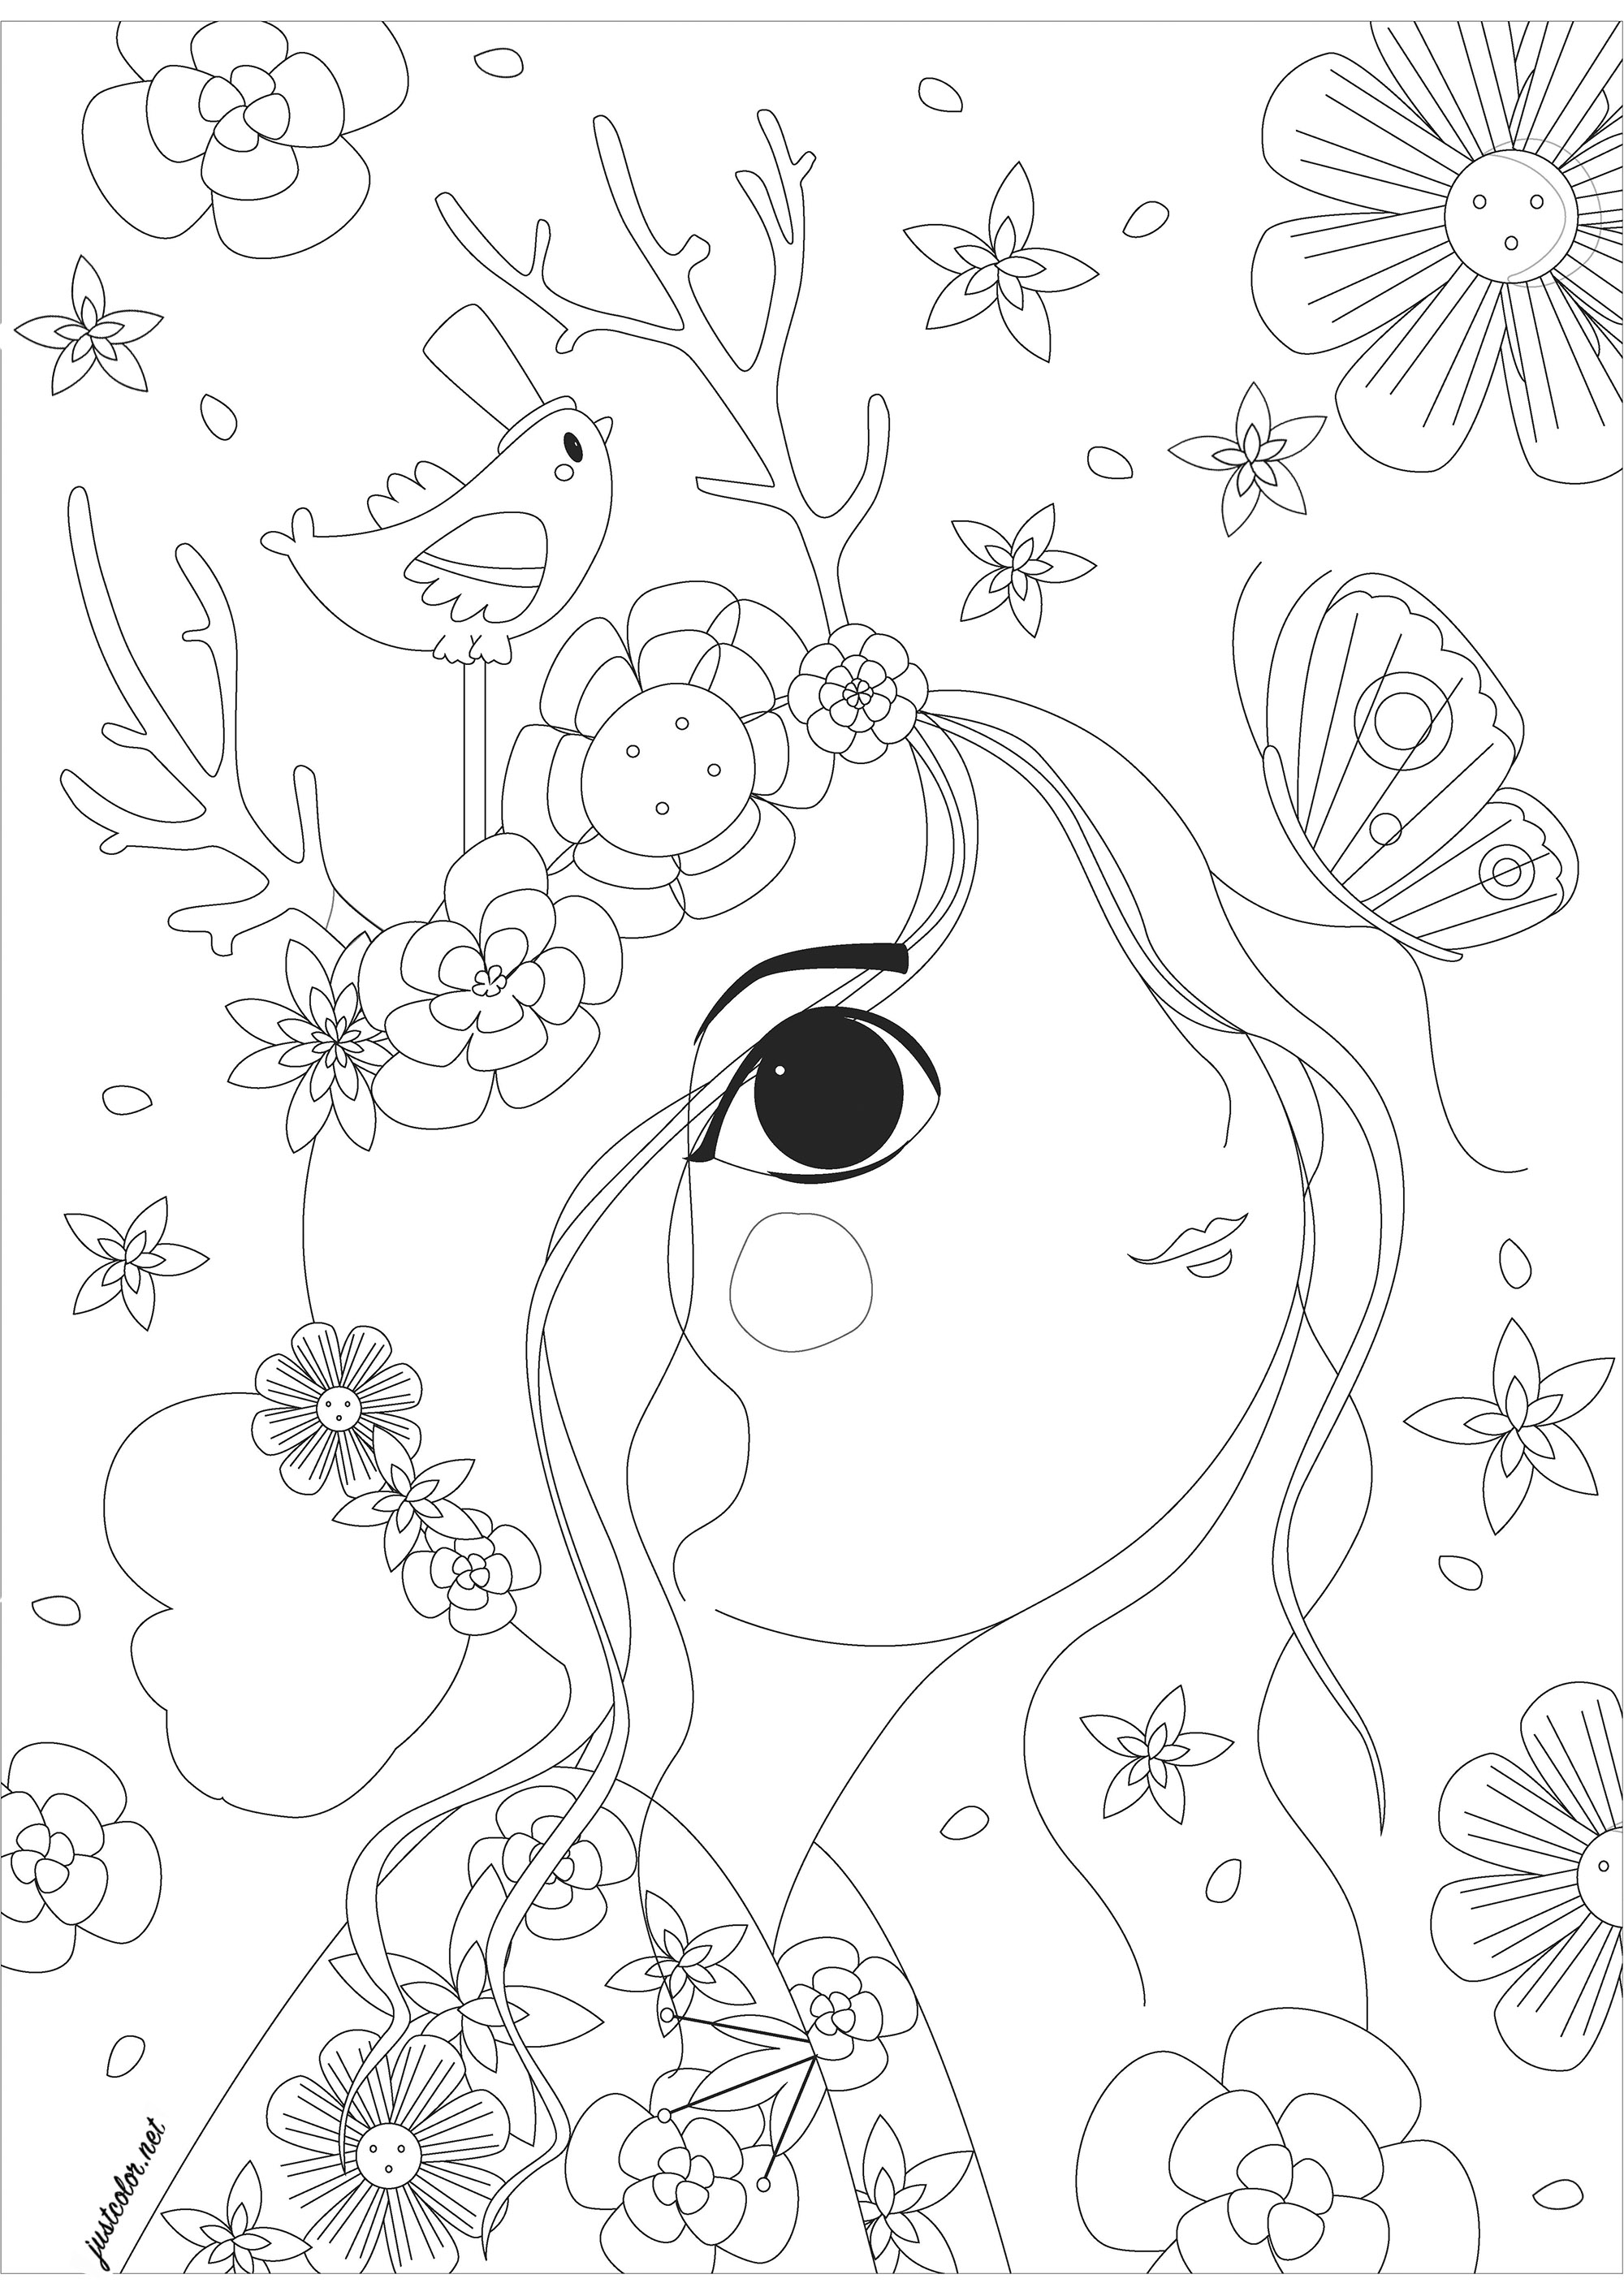 Mujer vista de perfil mirando una mariposa, rodeada de flores. Una página para colorear muy relajante, a la espera de hermosos colores para todas esas flores, mariposa, bonito pajarito y personaje femenino dibujado con un estilo único, Artista : Gaelle Picard